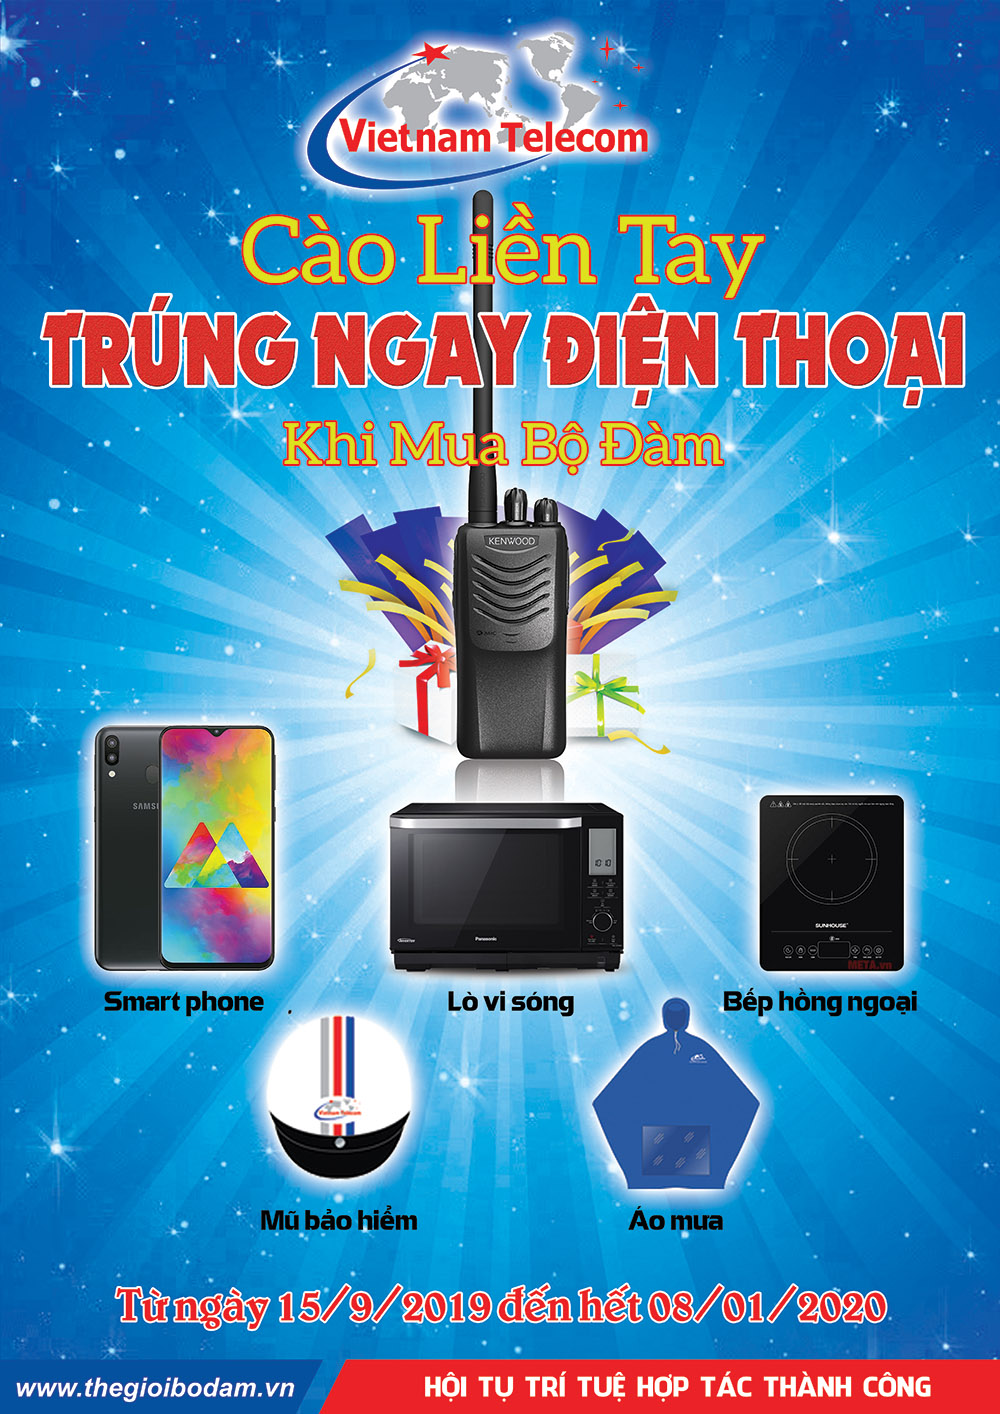 Mua điện thoại tại Vietnamtelecom có cơ hội trúng điện thoại sam sung